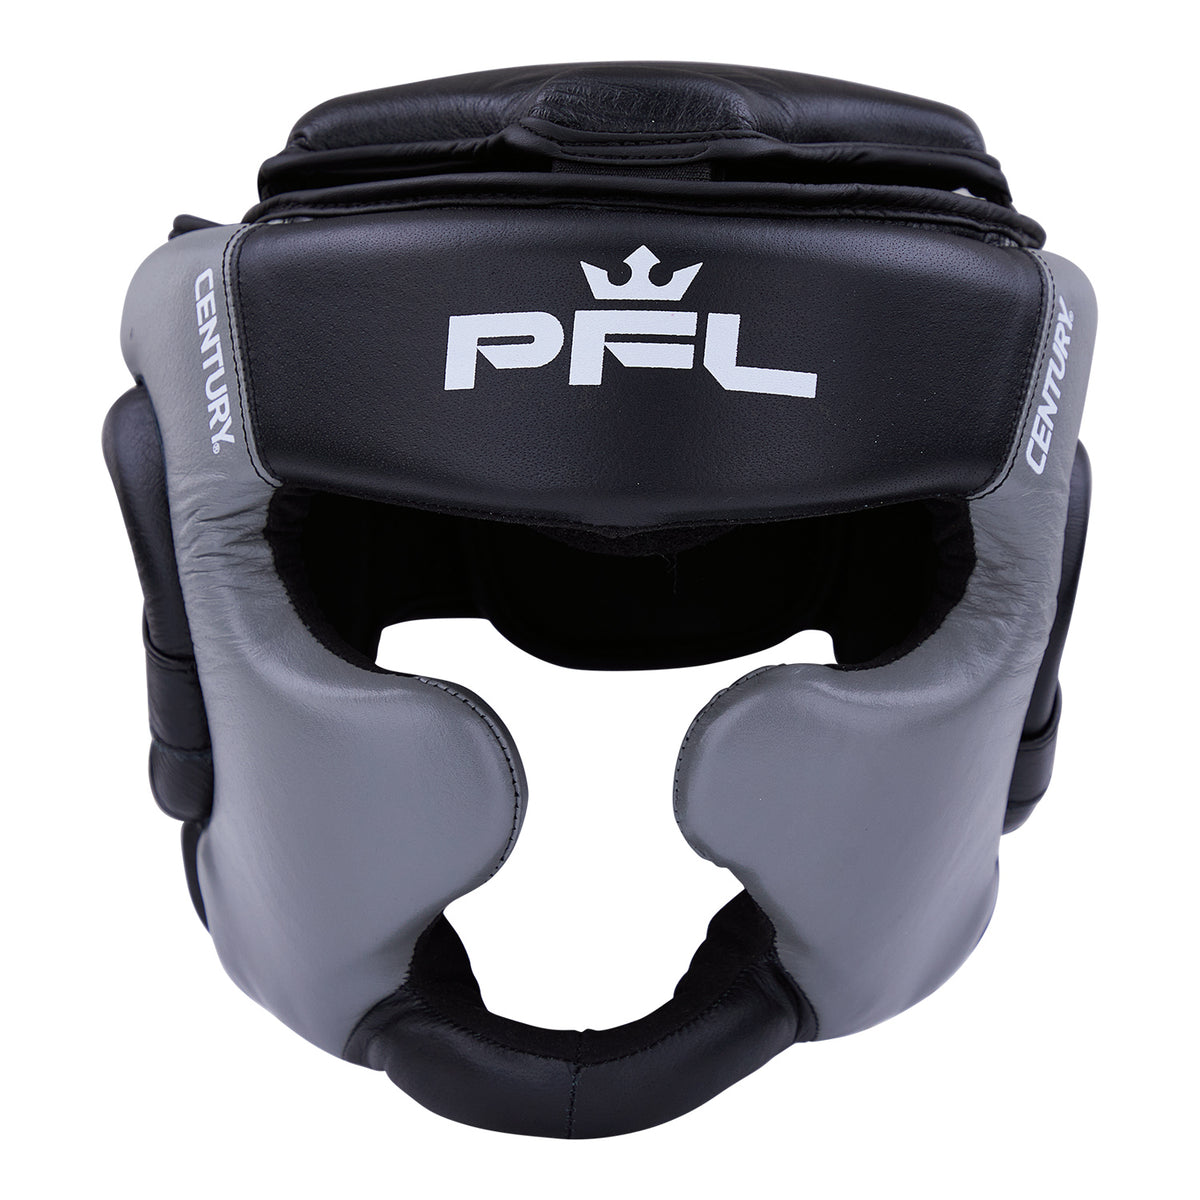 PFL Pro Full Face Headgear